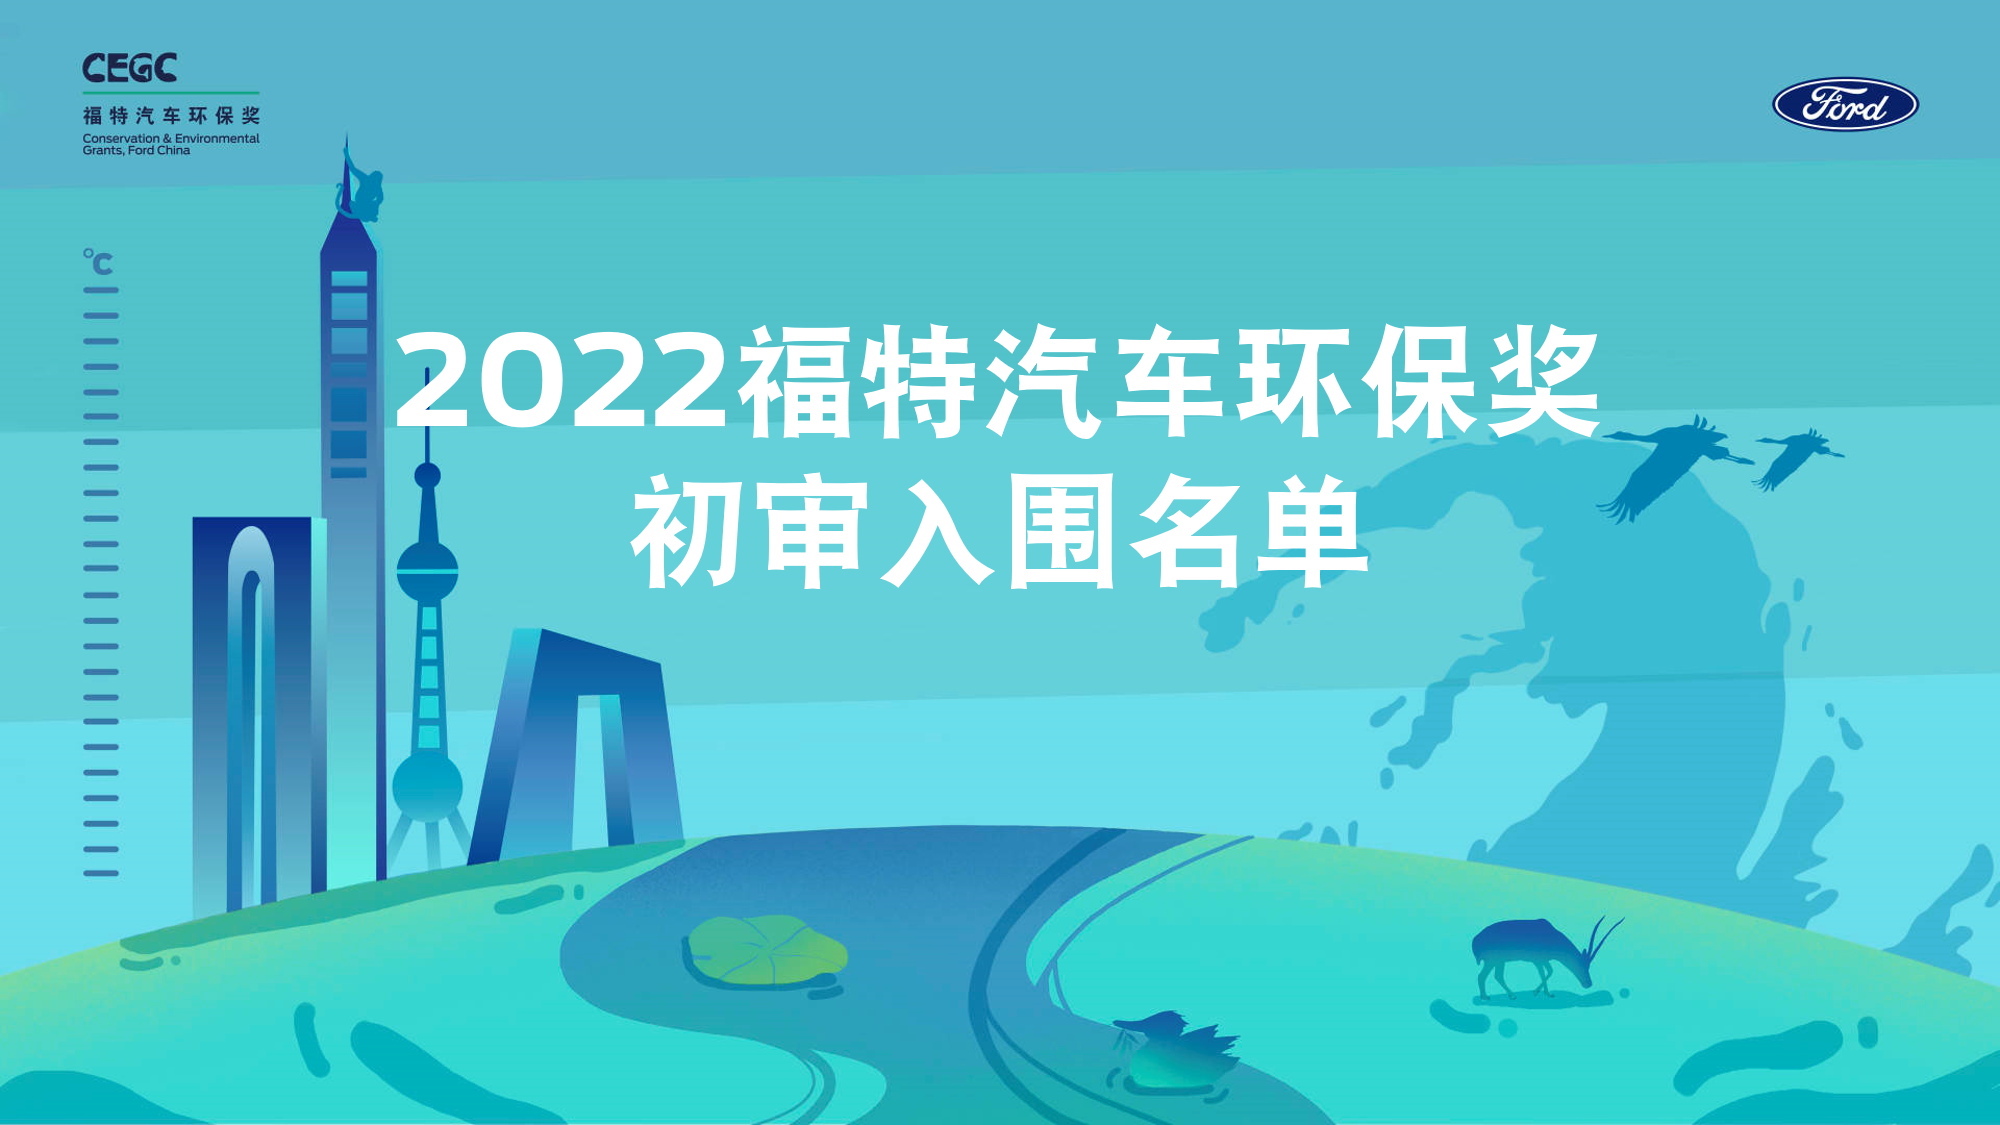 2022“福特汽车环保奖”初审入围名单公布